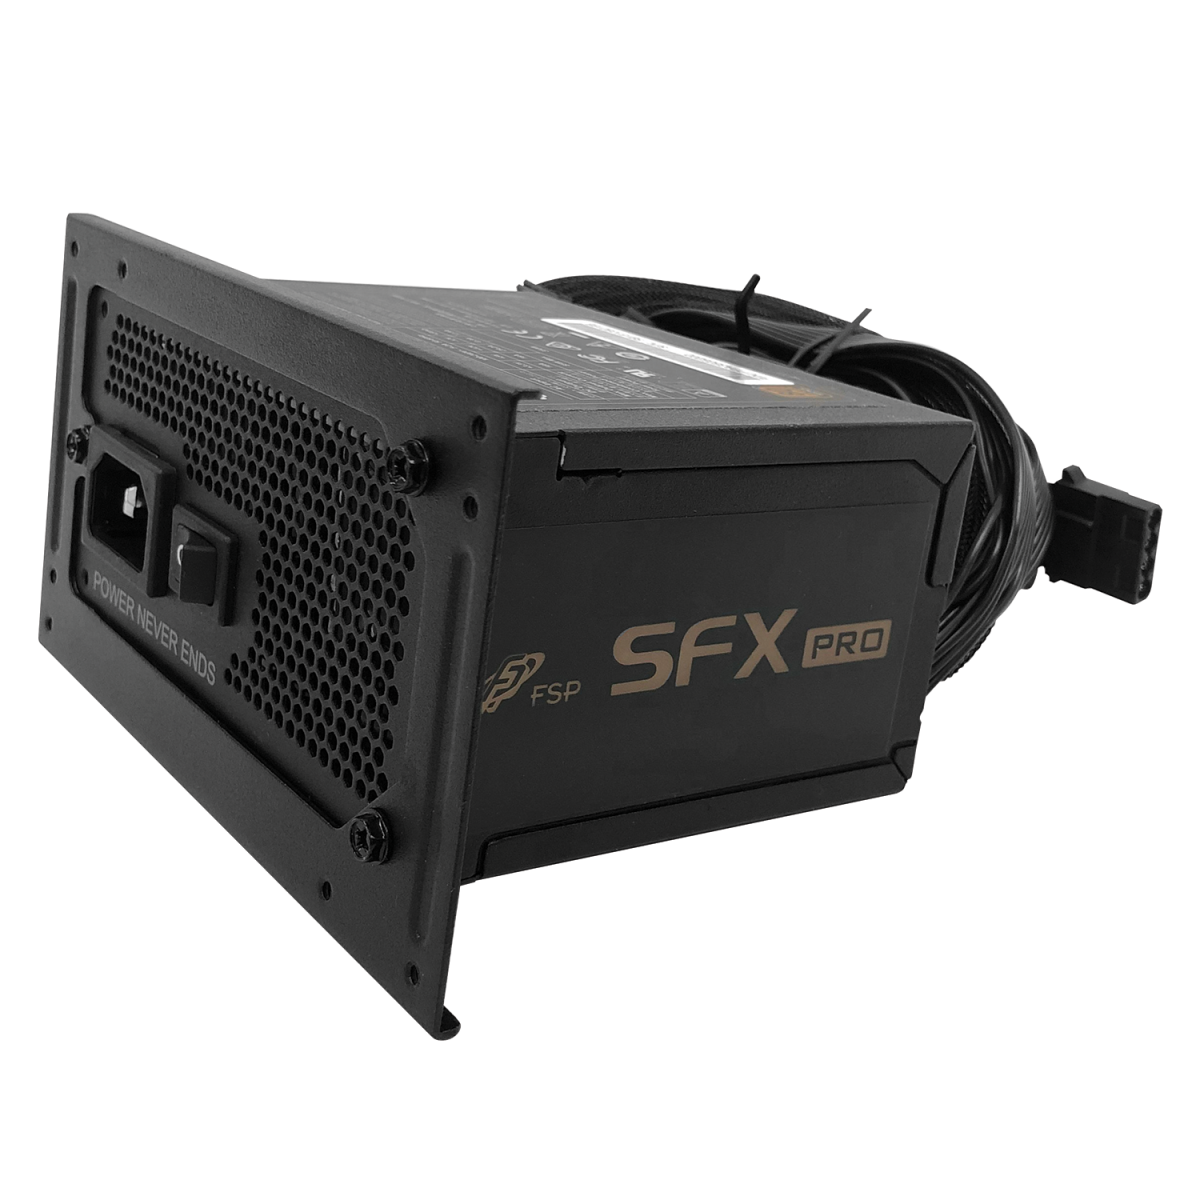 FSP SFX PRO 450W 80+ PLUS BRONZE POWER SUPPLY - FSP450-50SAC